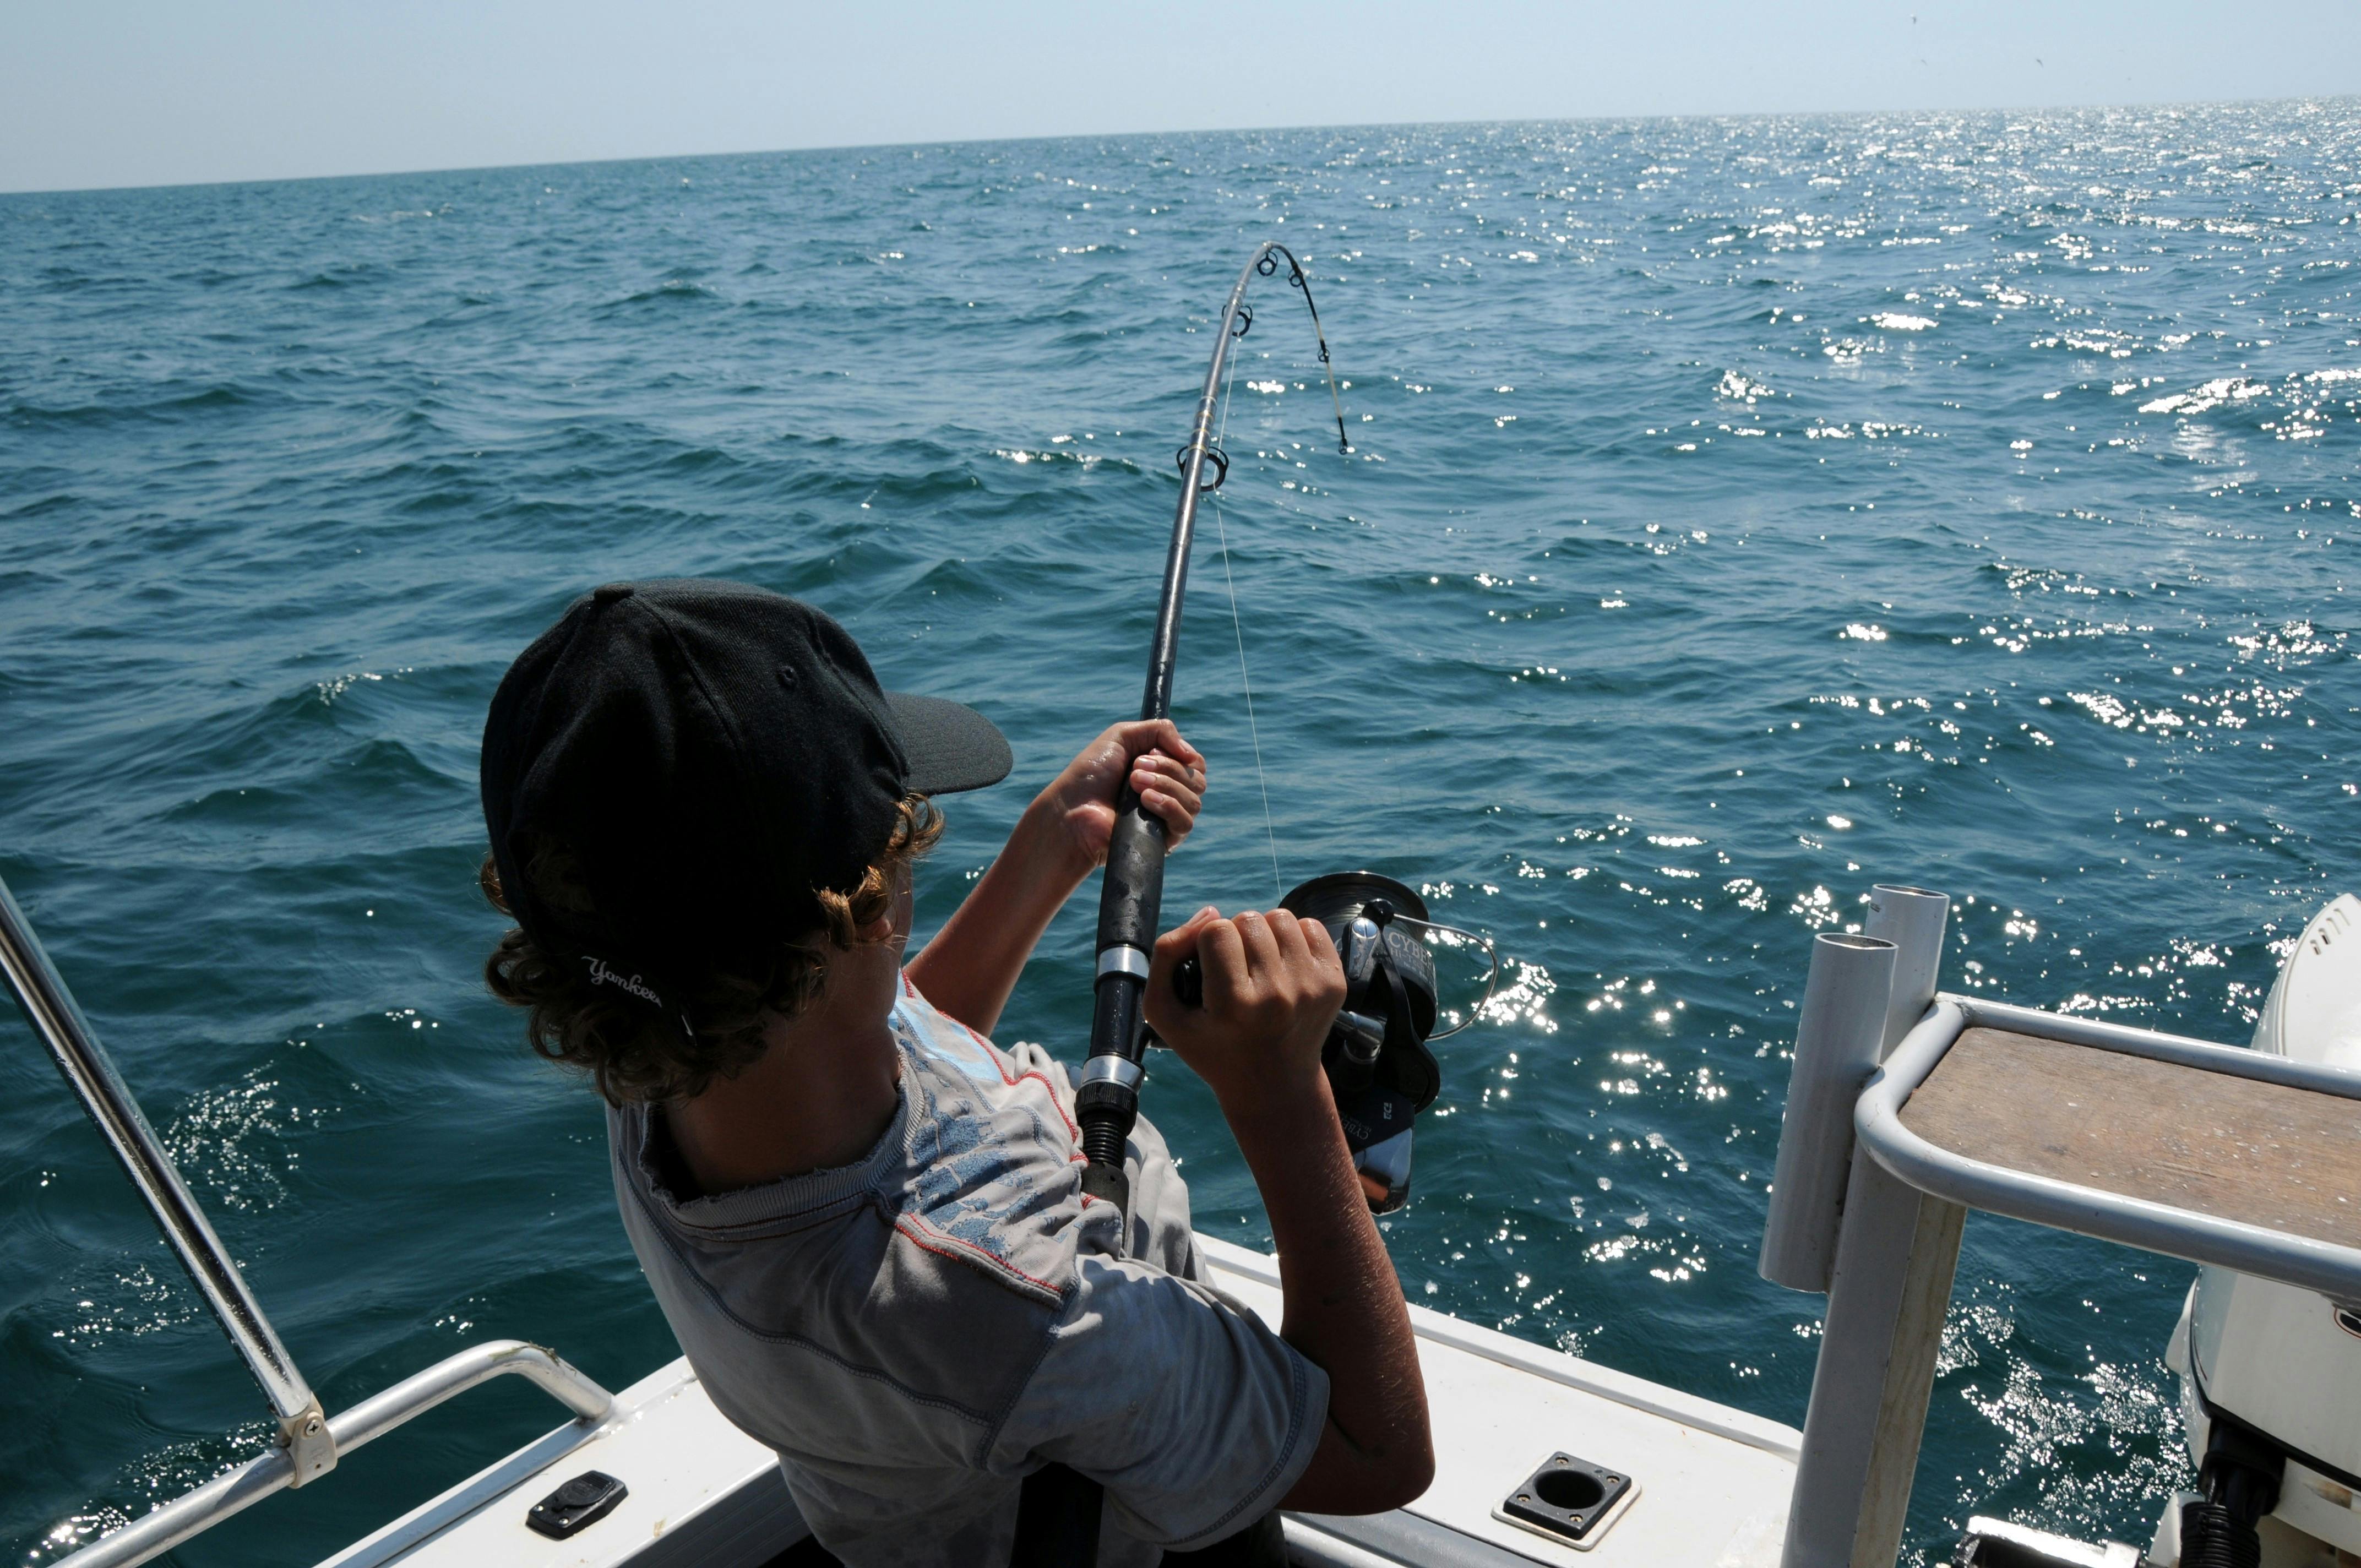 Bote de pesca : 4 images libres de droits, photos de stock et